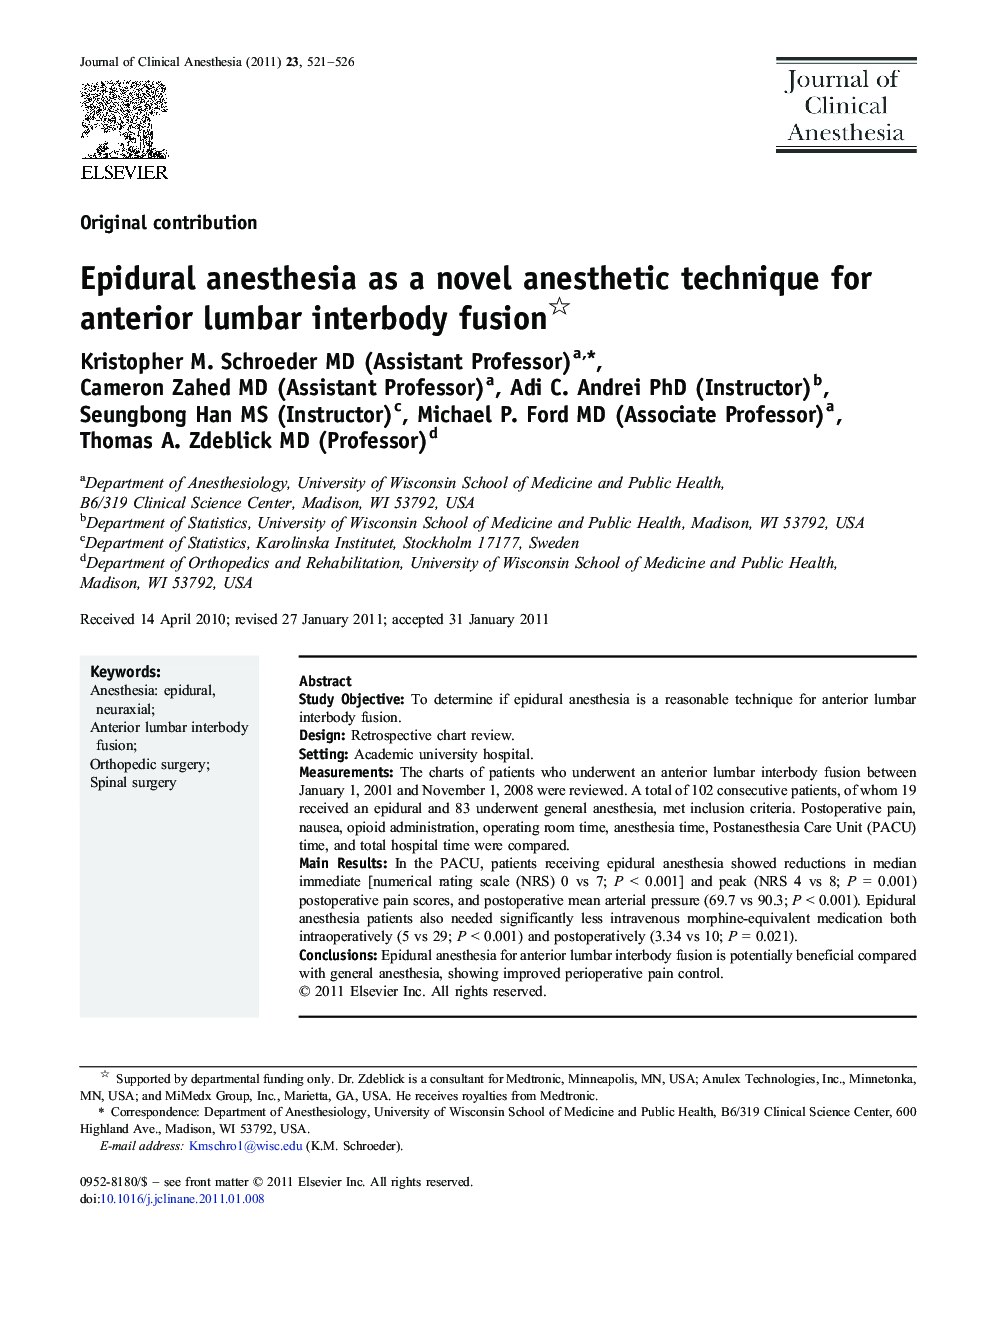 Epidural anesthesia as a novel anesthetic technique for anterior lumbar interbody fusion 